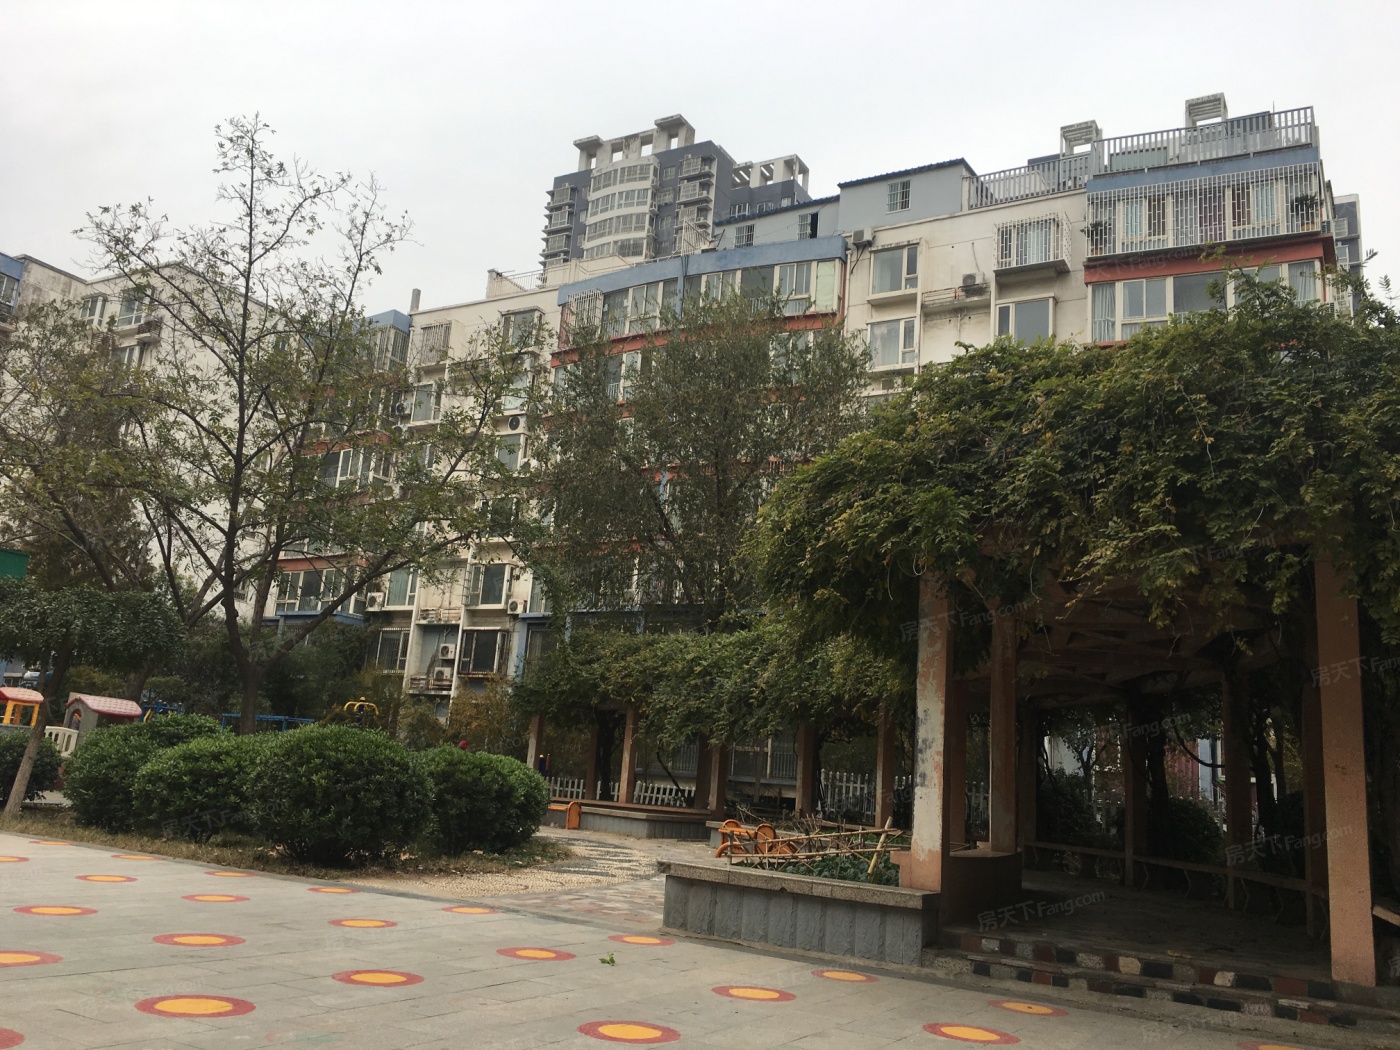 地址(在哪里):华林都市家园位于郑州市金水区农业路与南阳路交叉口